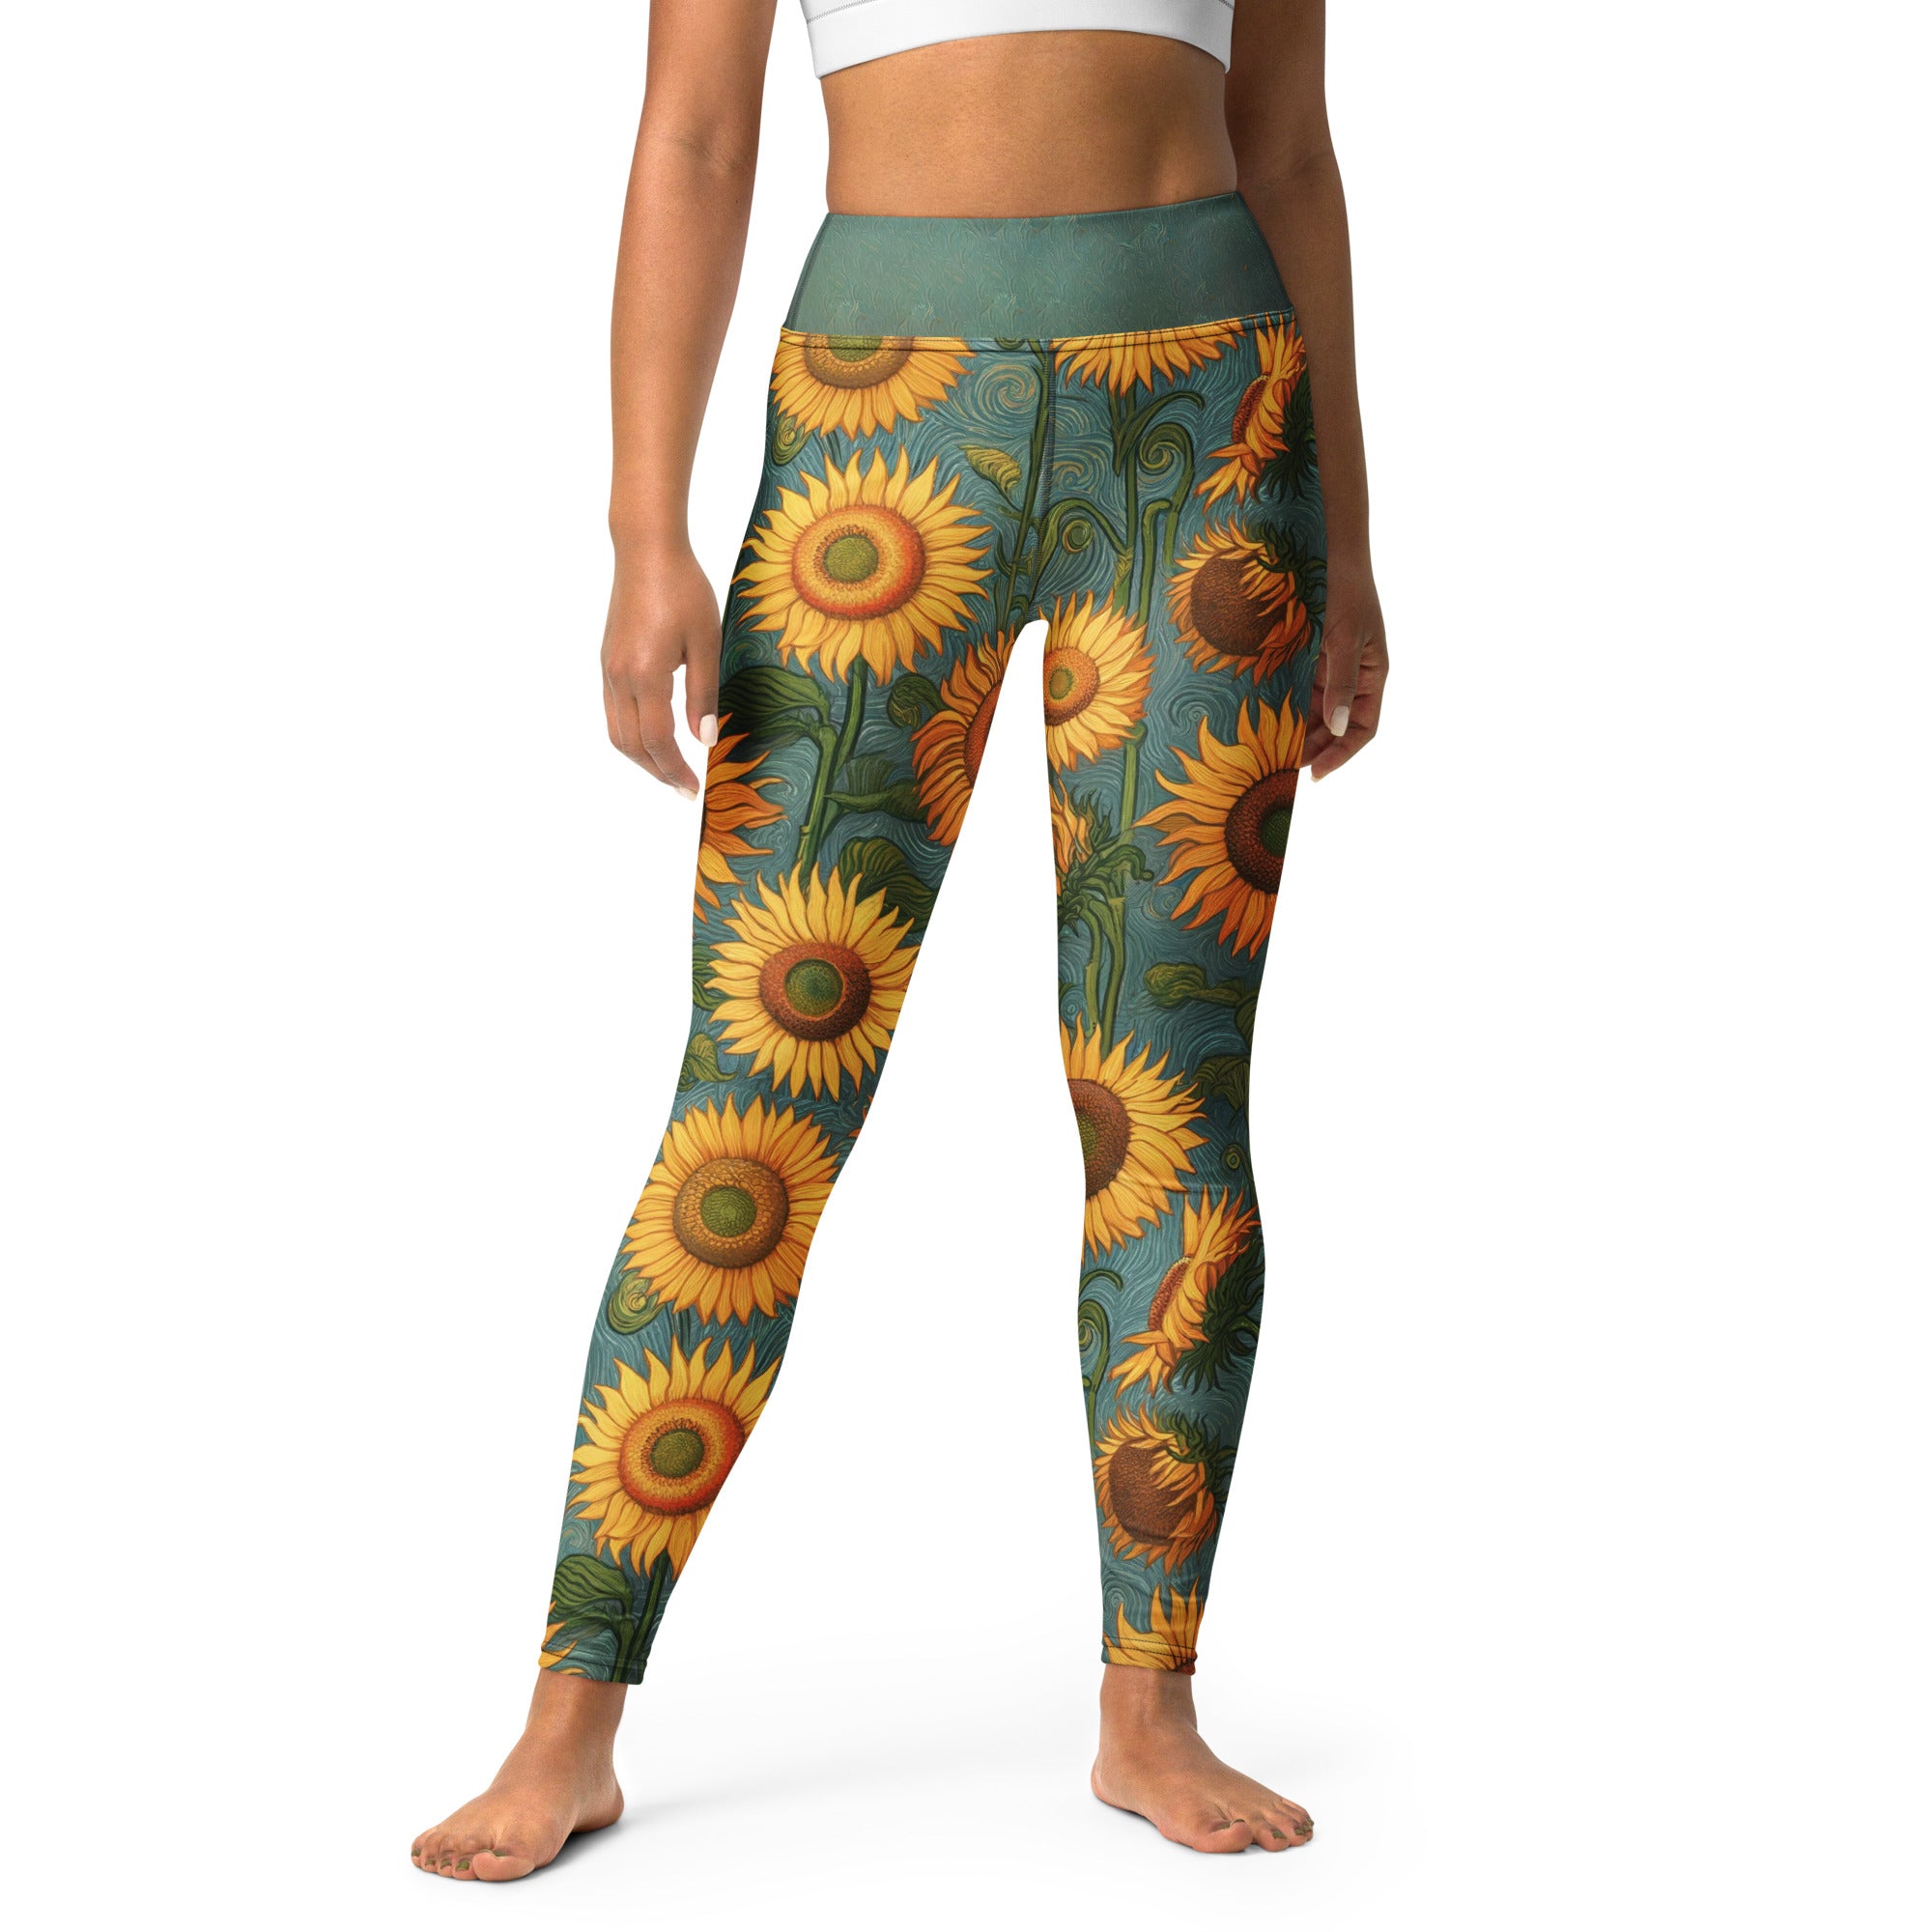 Vincent van Gogh 'Sunflowers' Famous Painting Yoga Leggings | Premium Art Yoga Leggings